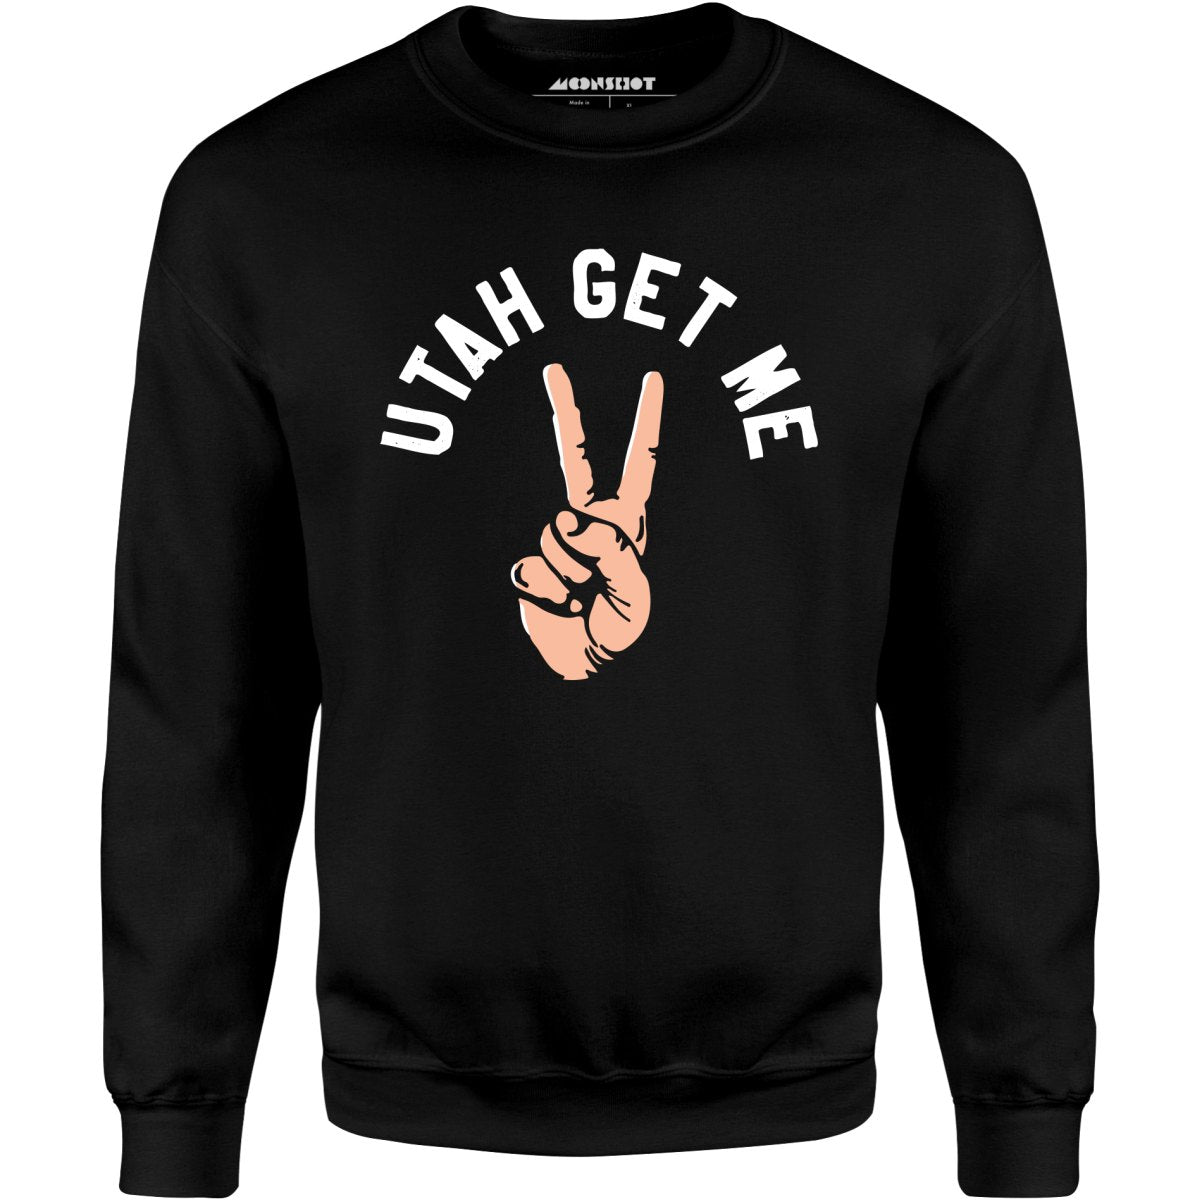 Utah Get Me Two - Unisex Sweatshirt